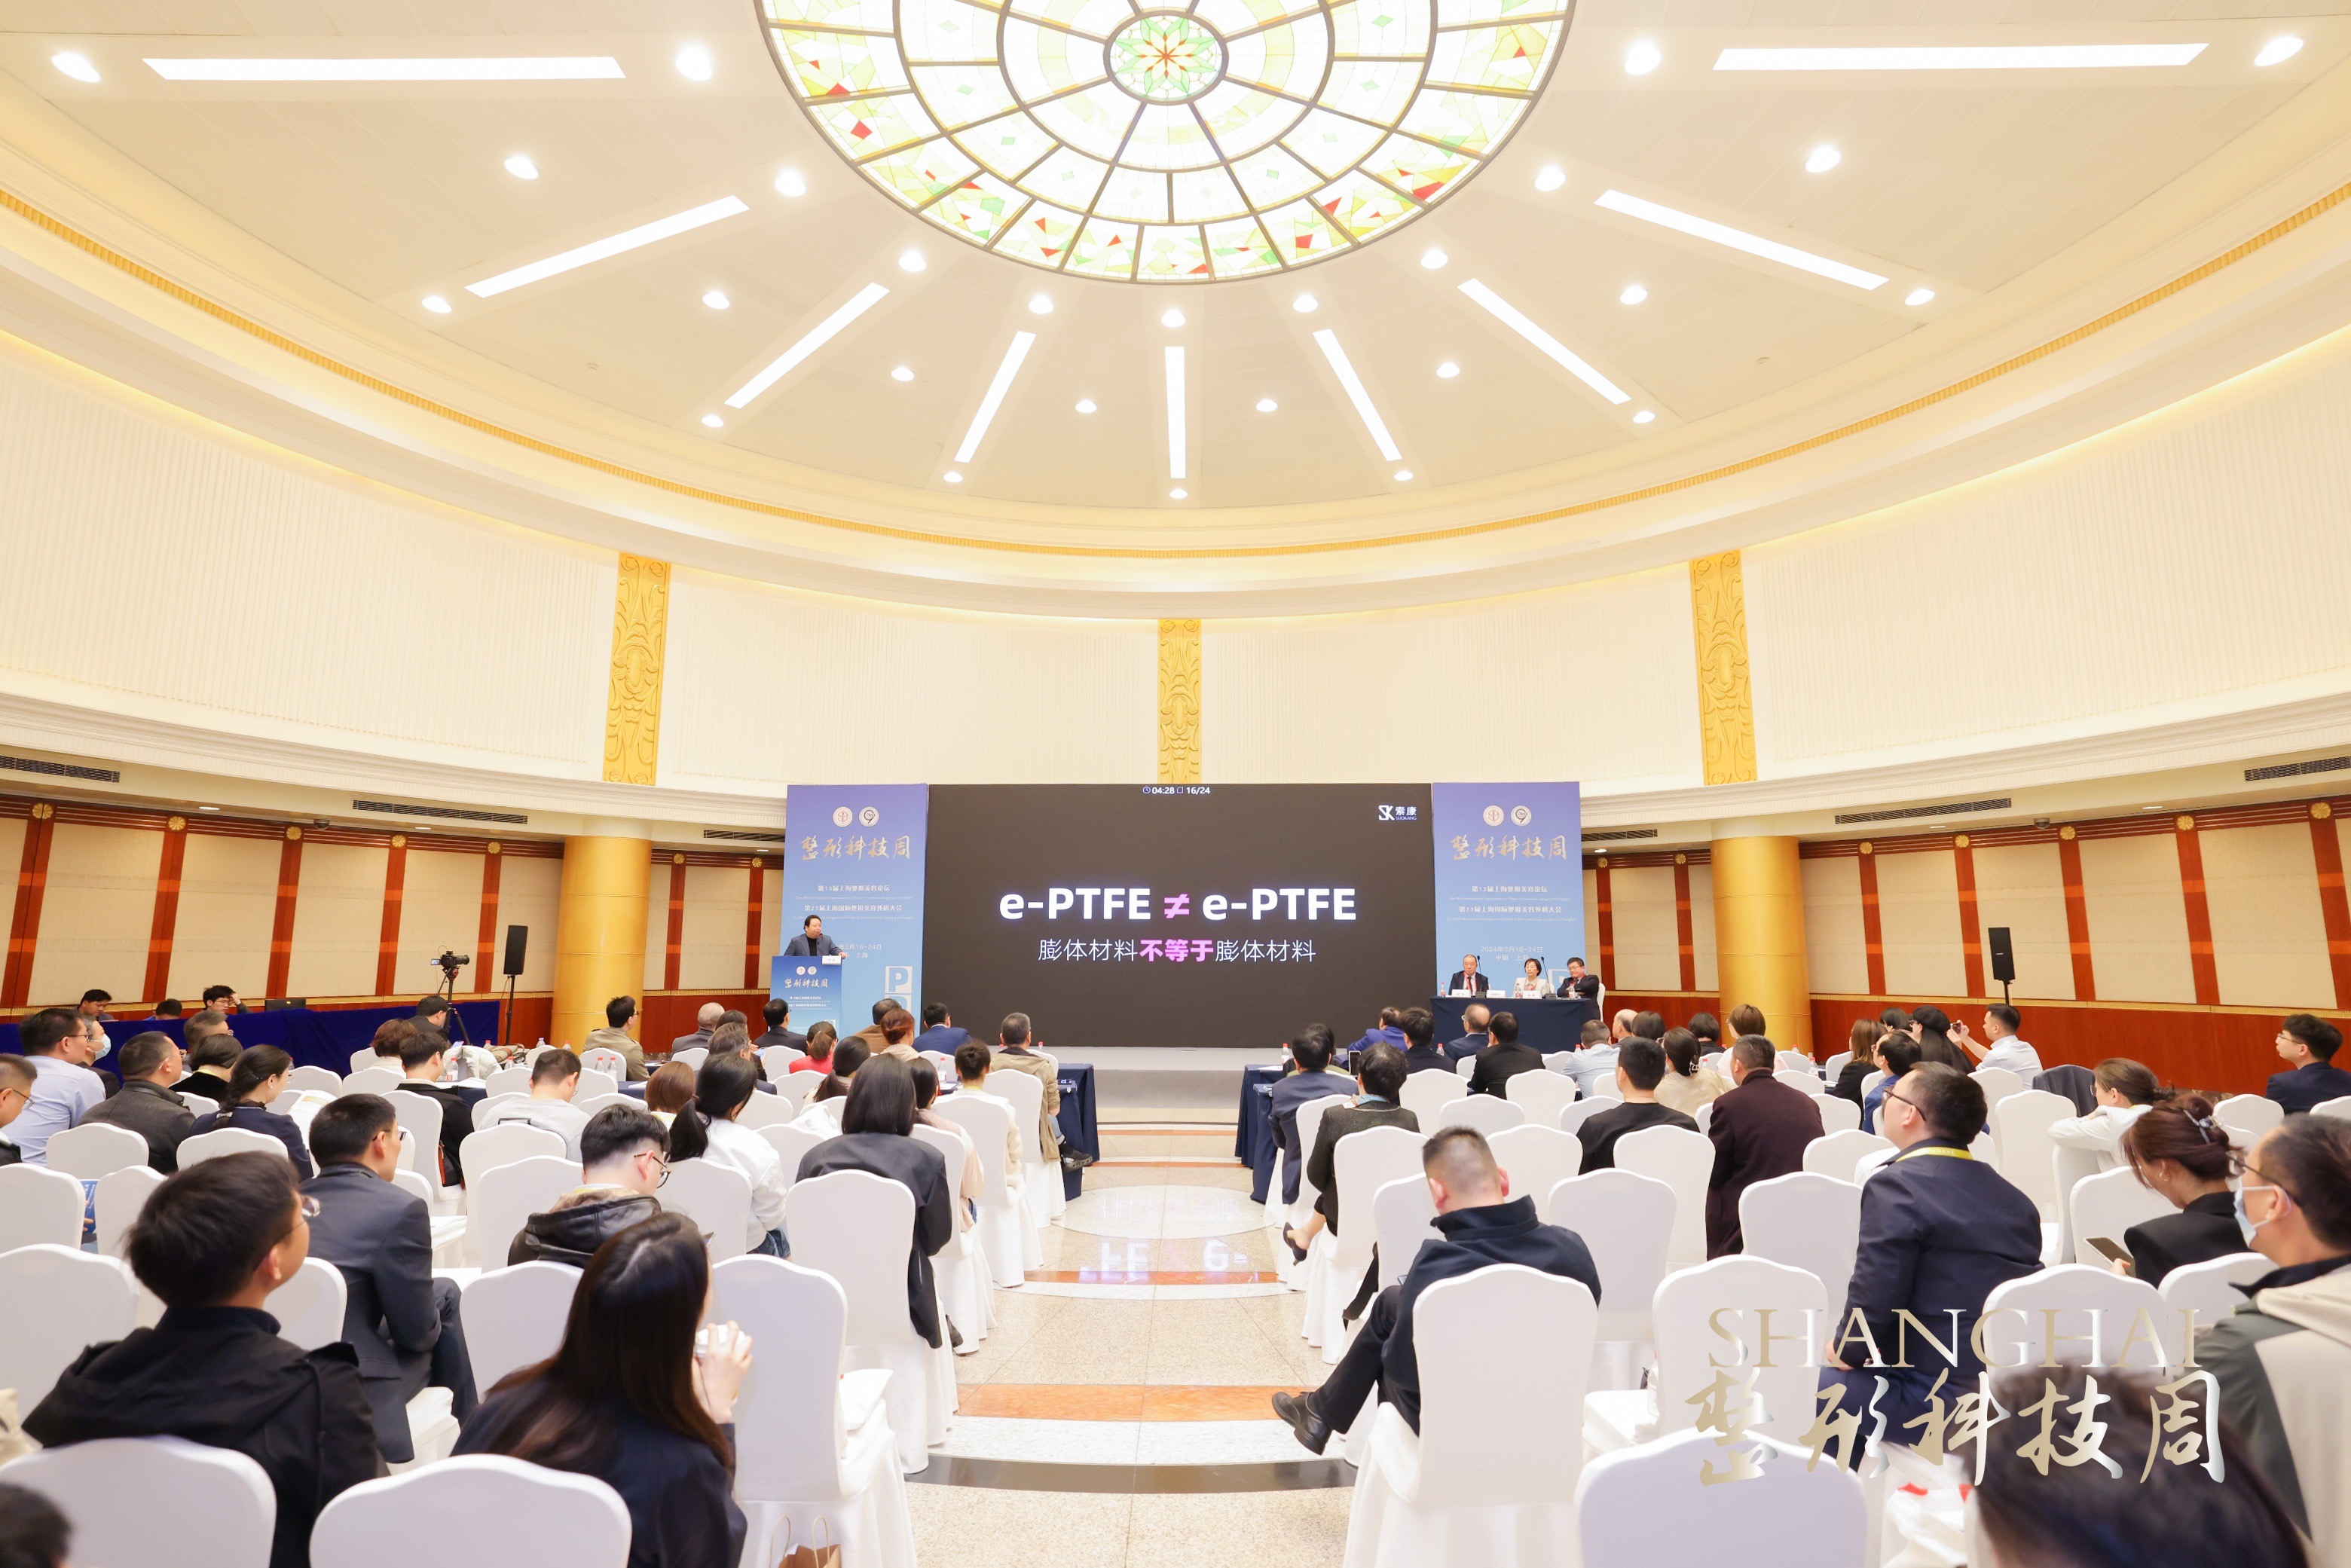 索康受邀出席上海科技整形周，董事长叶明主题演讲洞见行业未来